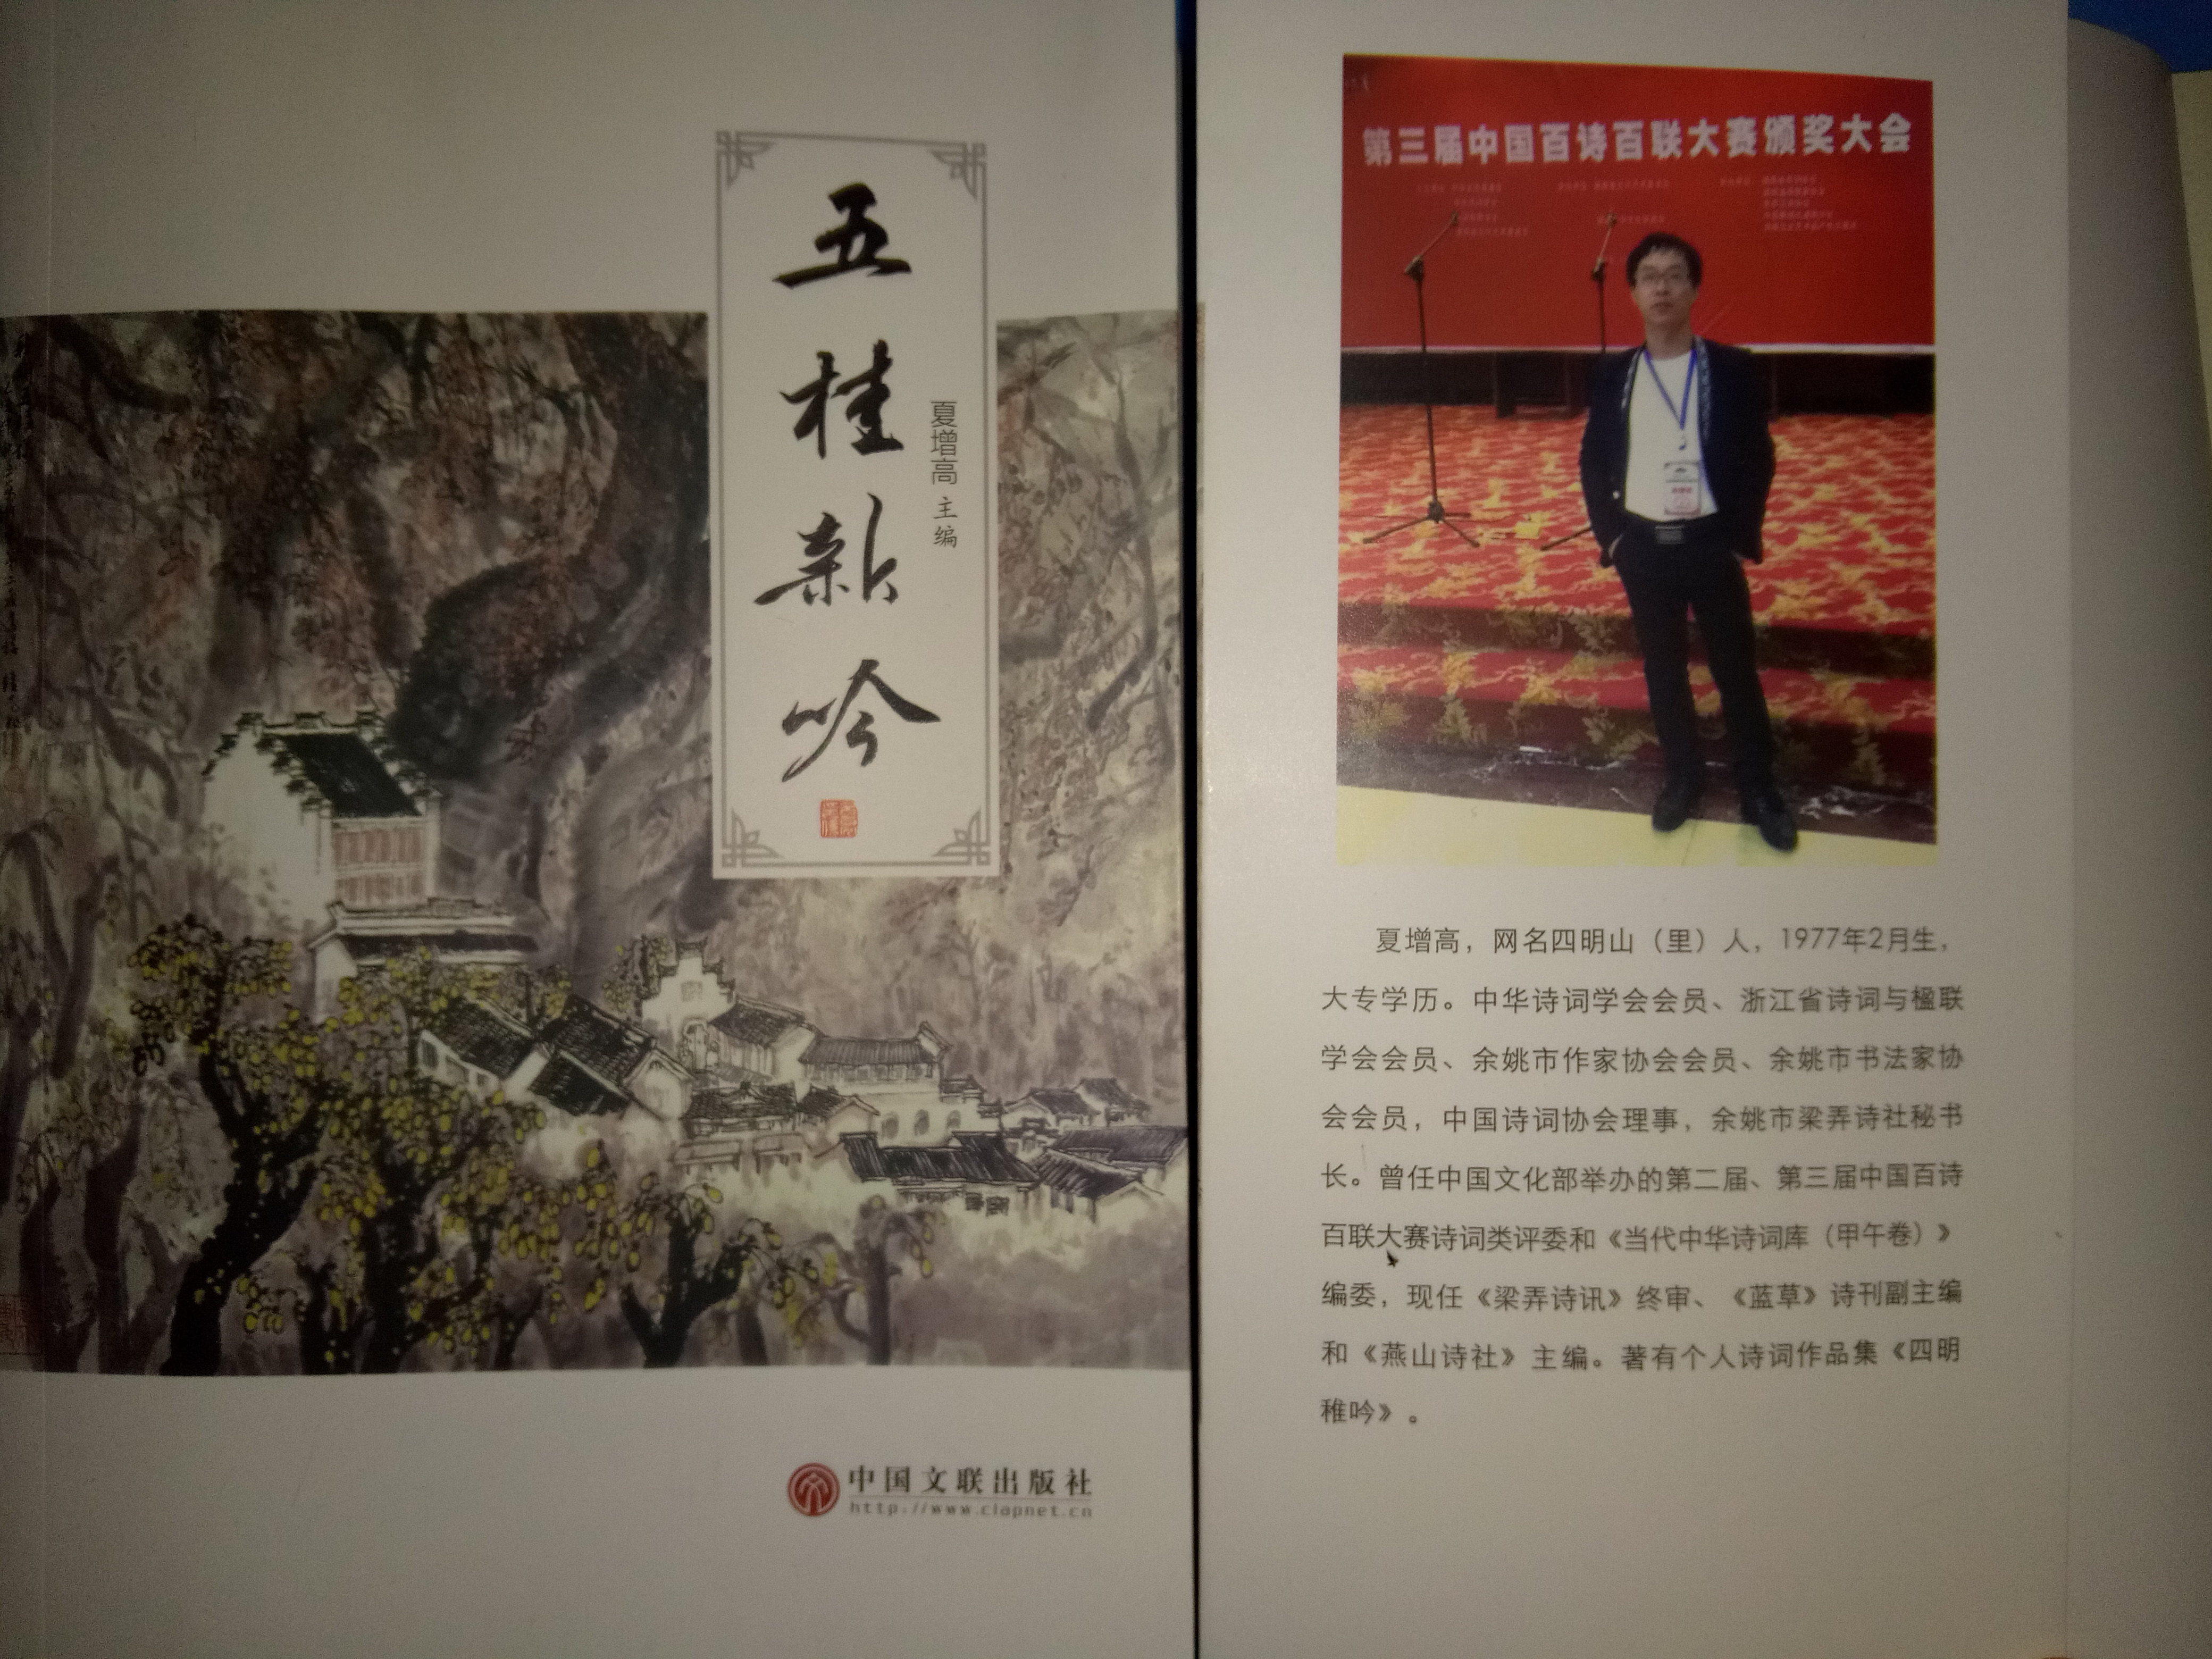 集《五桂新吟》由中国文联出版社出版发行